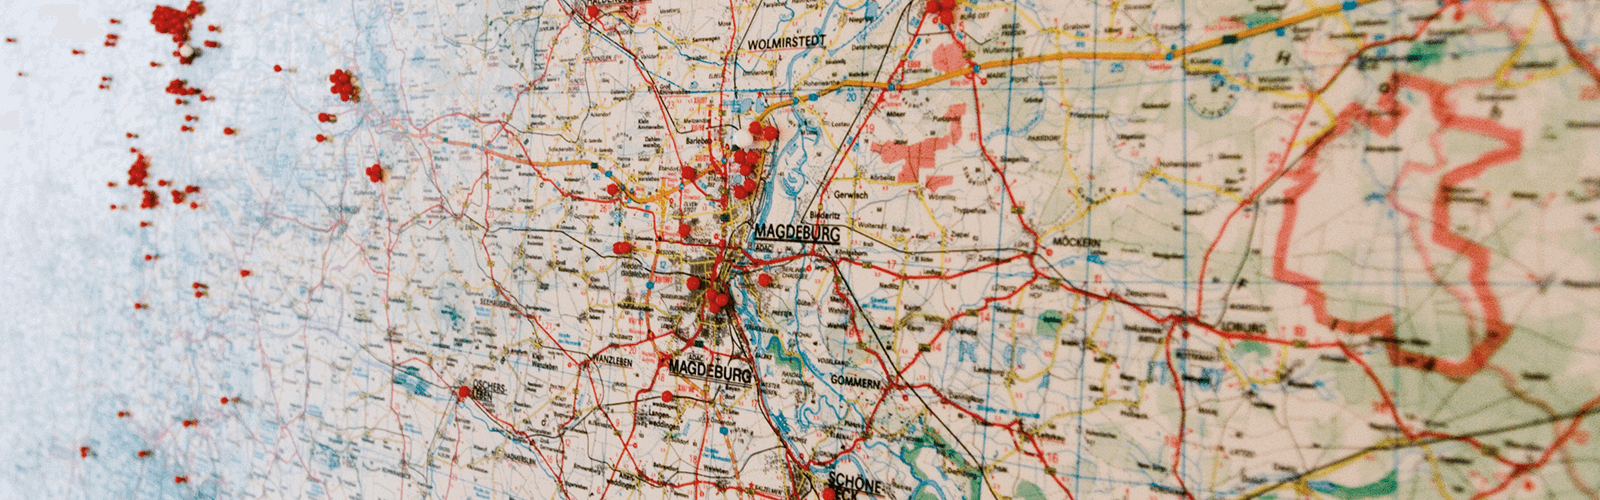 Landkarte von der Region Magdeburg